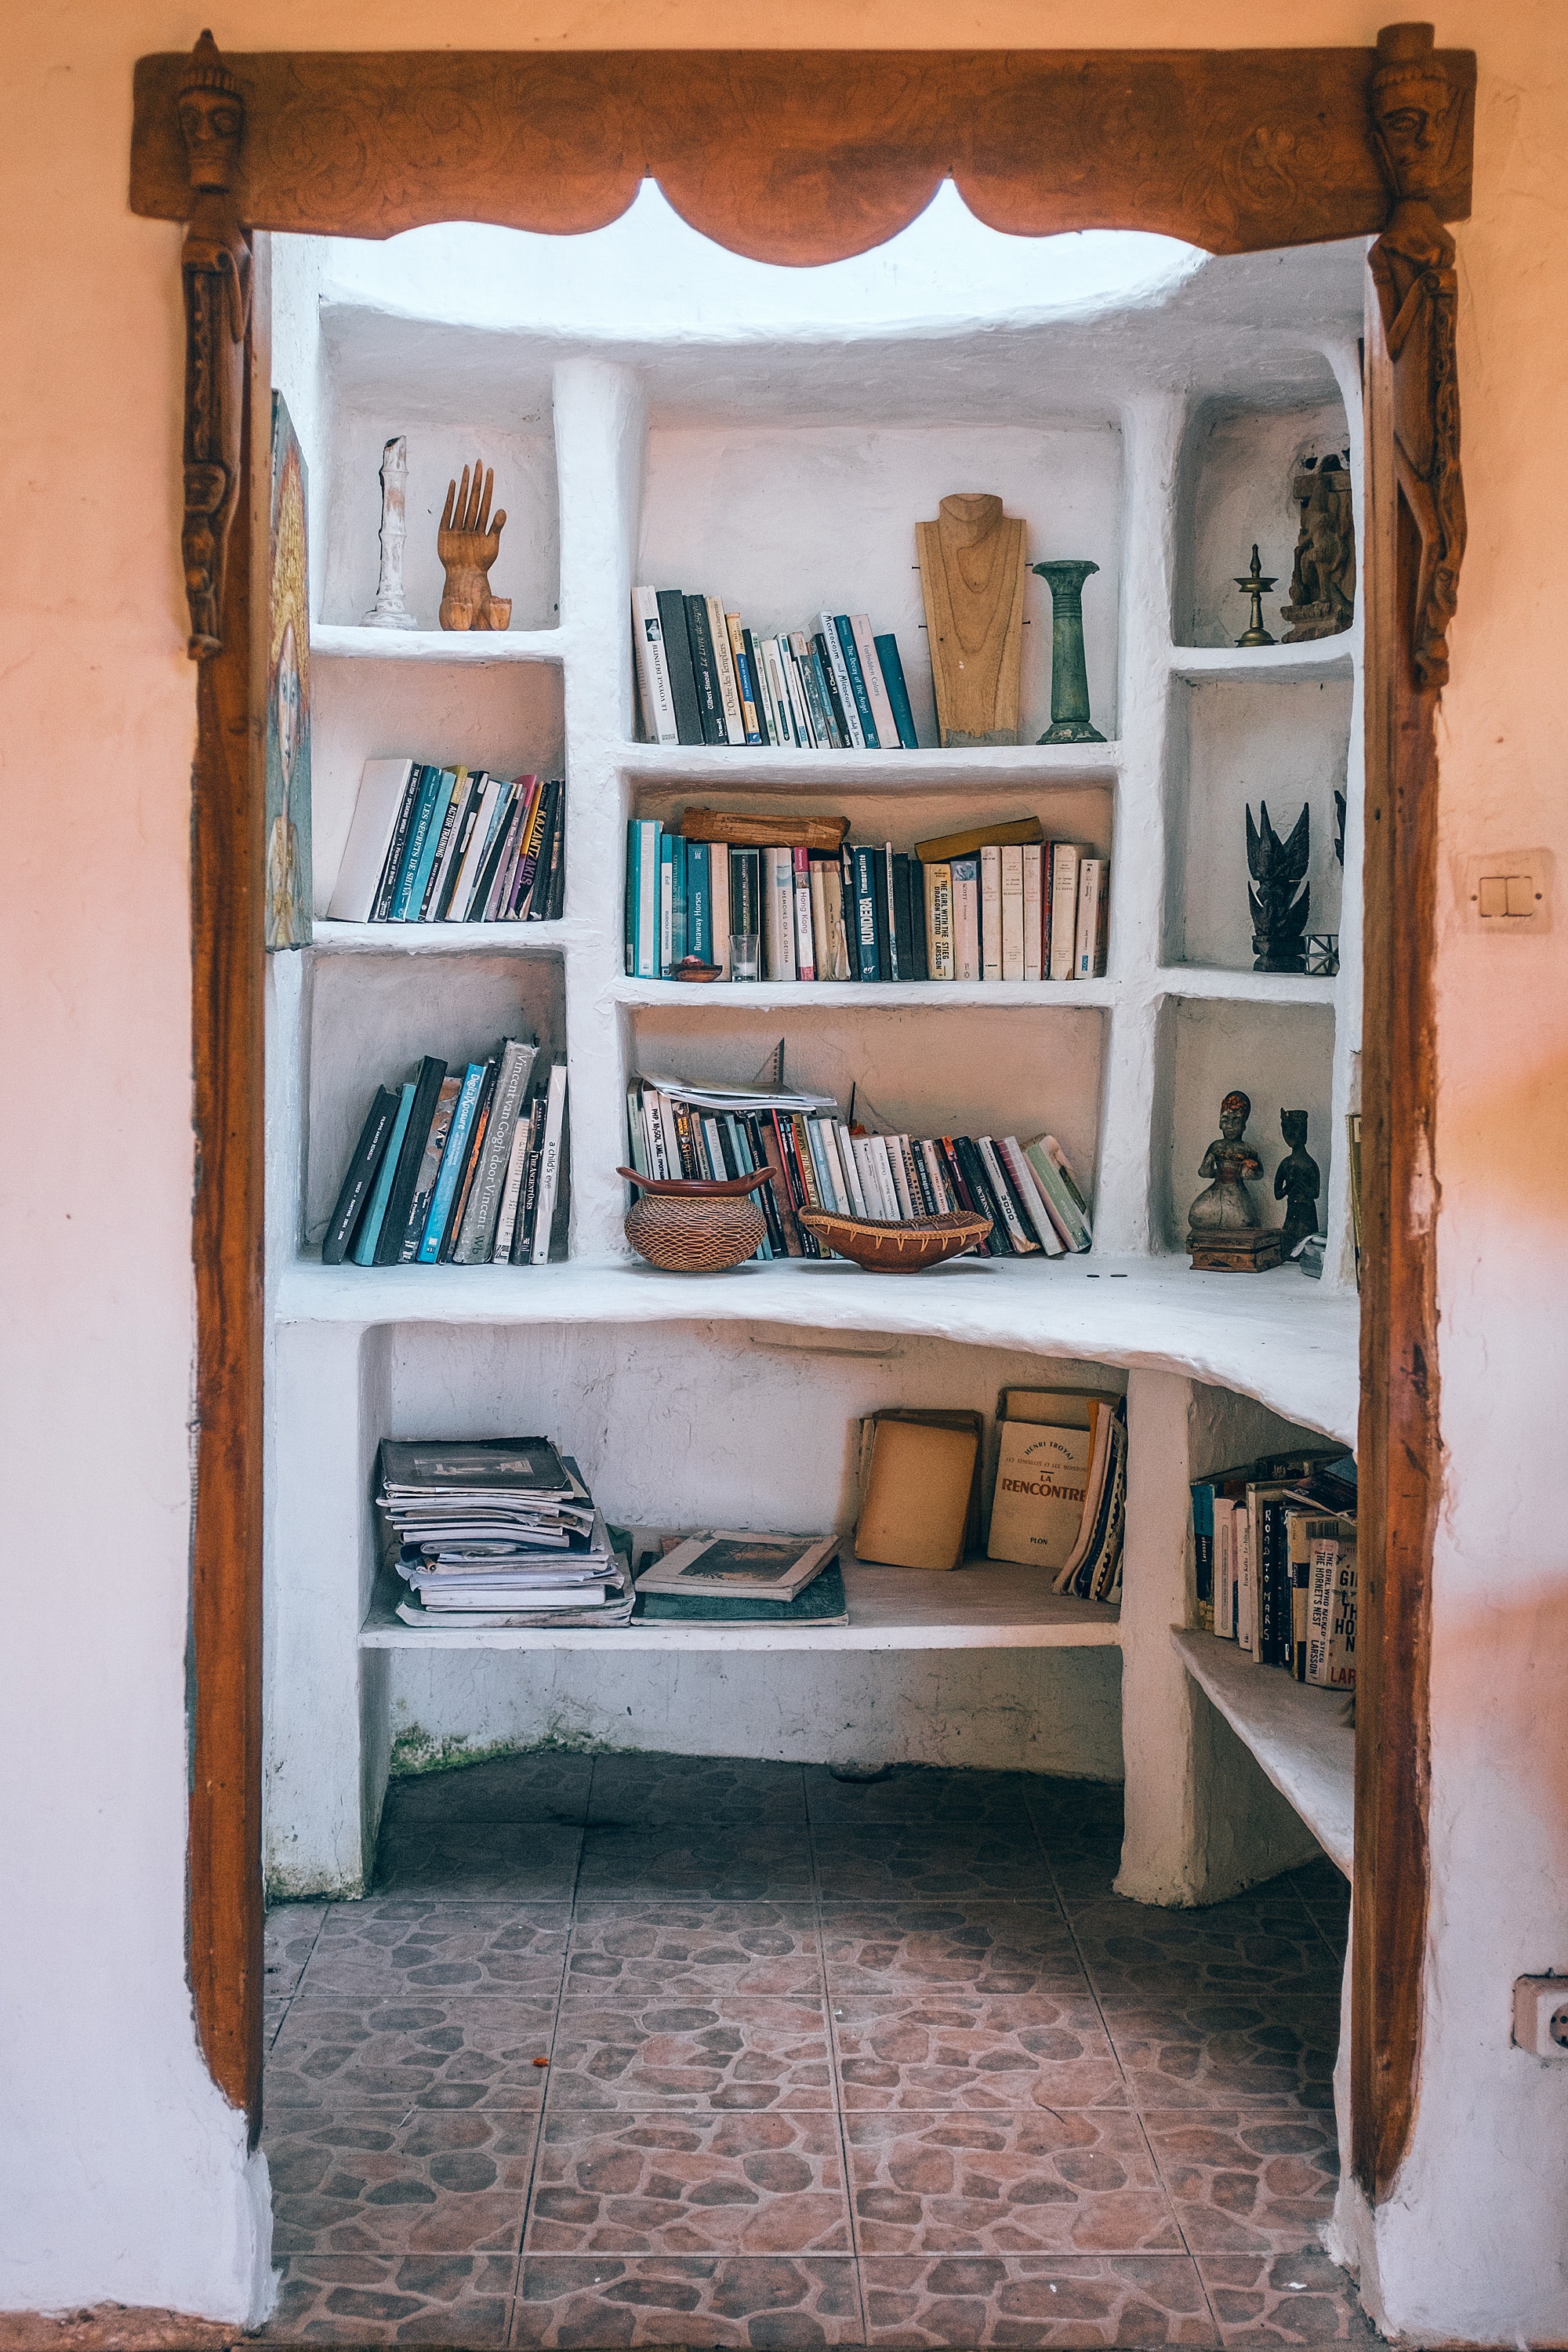 Habitación pequeña solo con estanterías de libros.